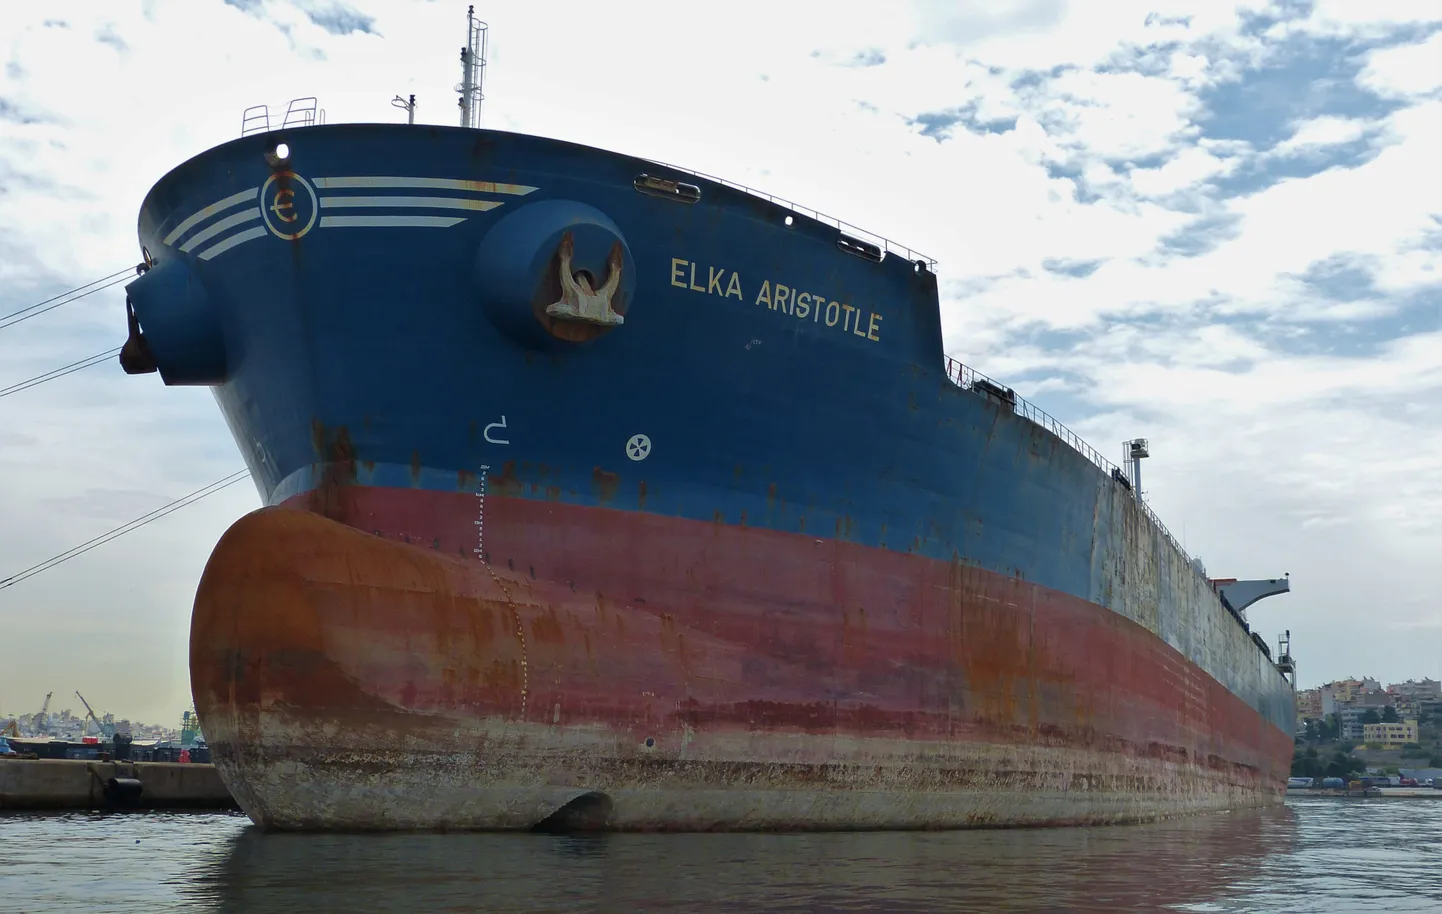 Kreeka naftatanker Elka Aristotle Pireuse sadamas 17. mail 2018.